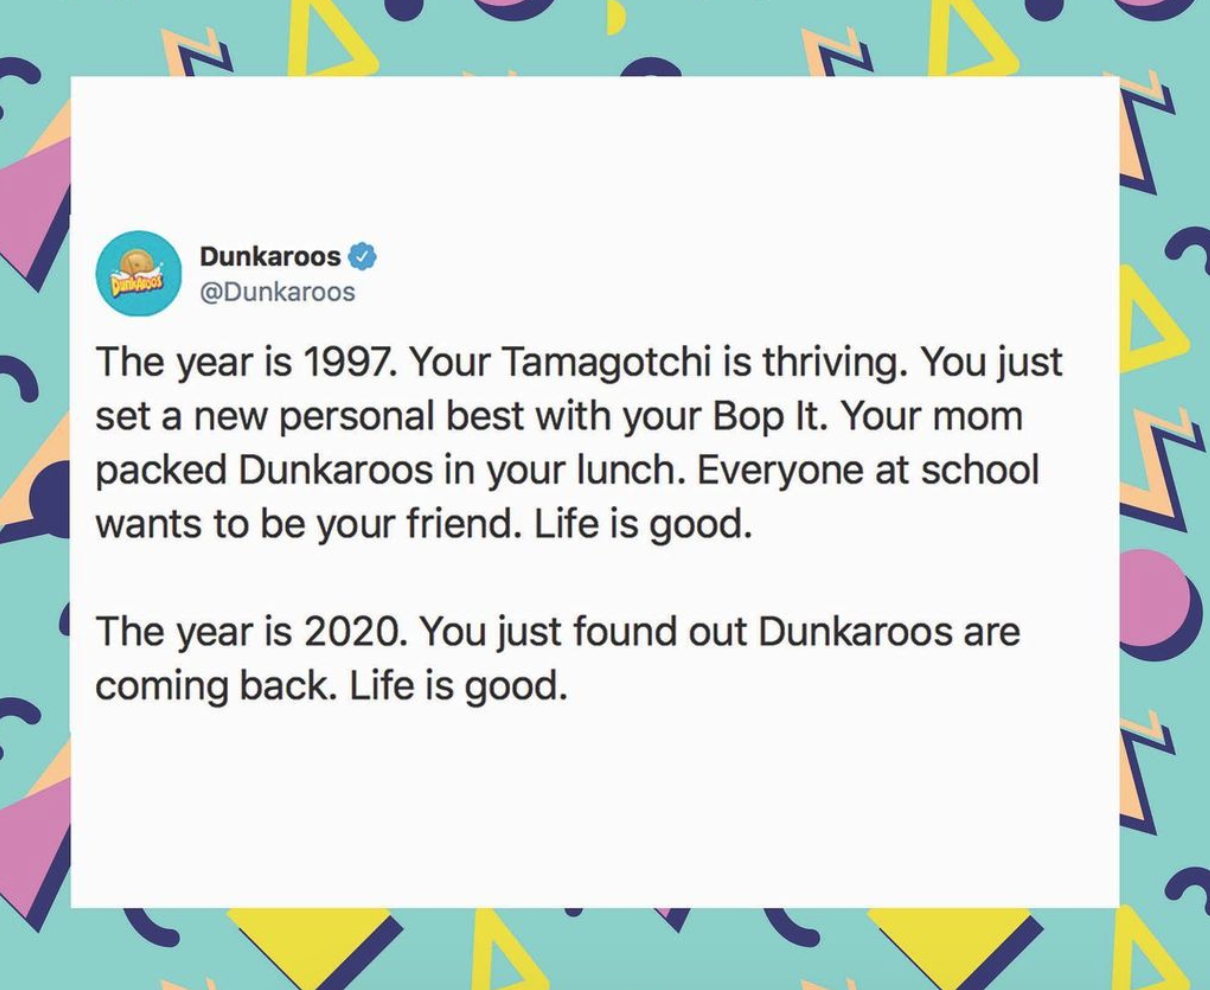 Dunkaroos Announce Their Return